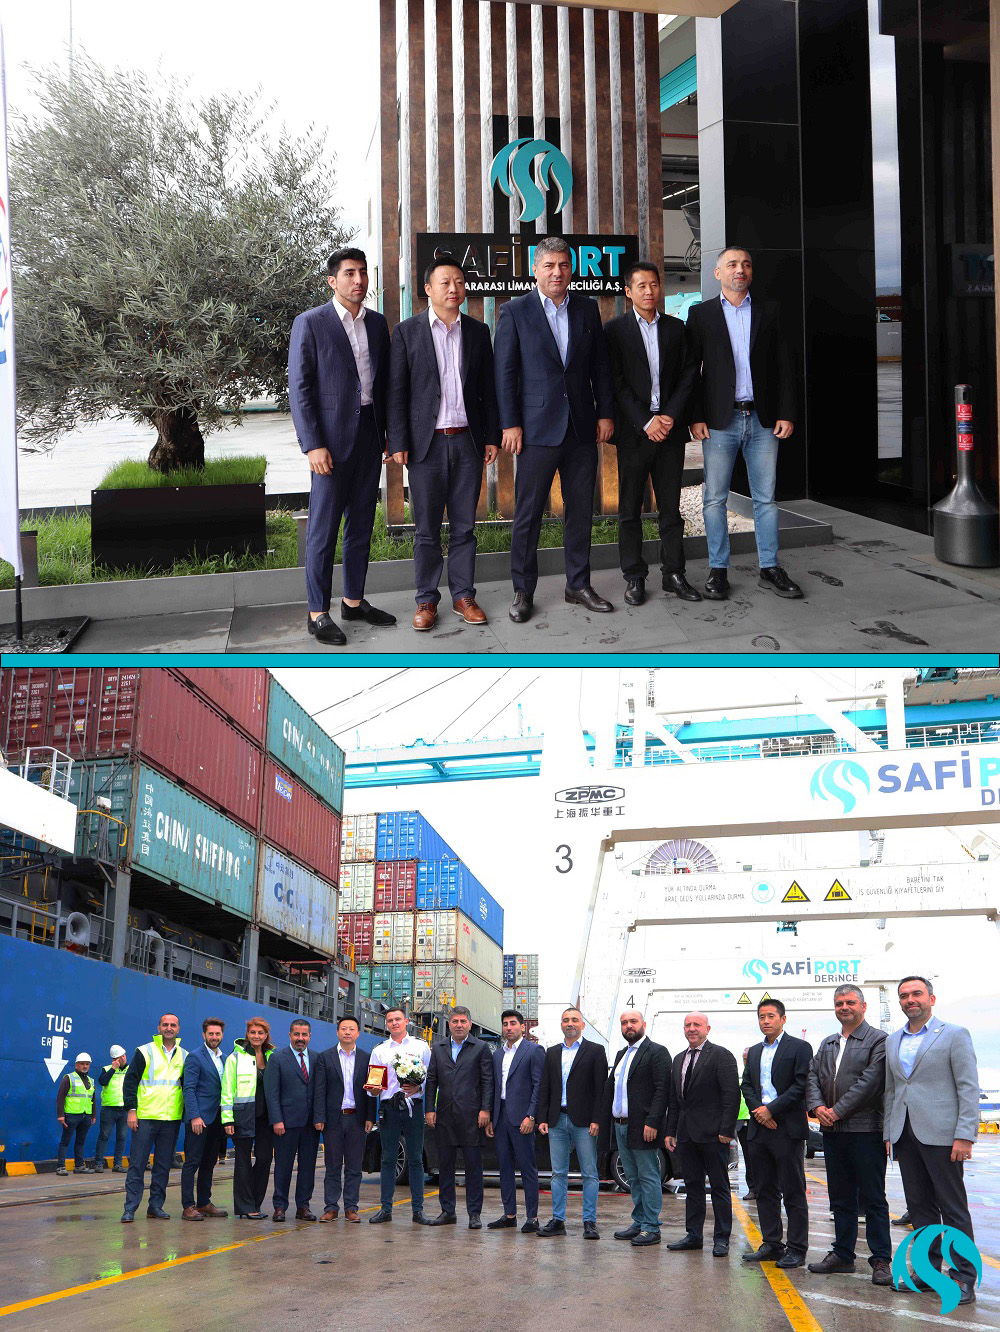 COSCO Shipping’in AGT servisi (Adriatic Greece Turkey) AS ANITA gemisi ile limanımıza ilk uğrağını gerçekleştirmiş olup düzenli olarak servisine devam edecektir. Limanımıza hoş geldin Cosco Shipping!